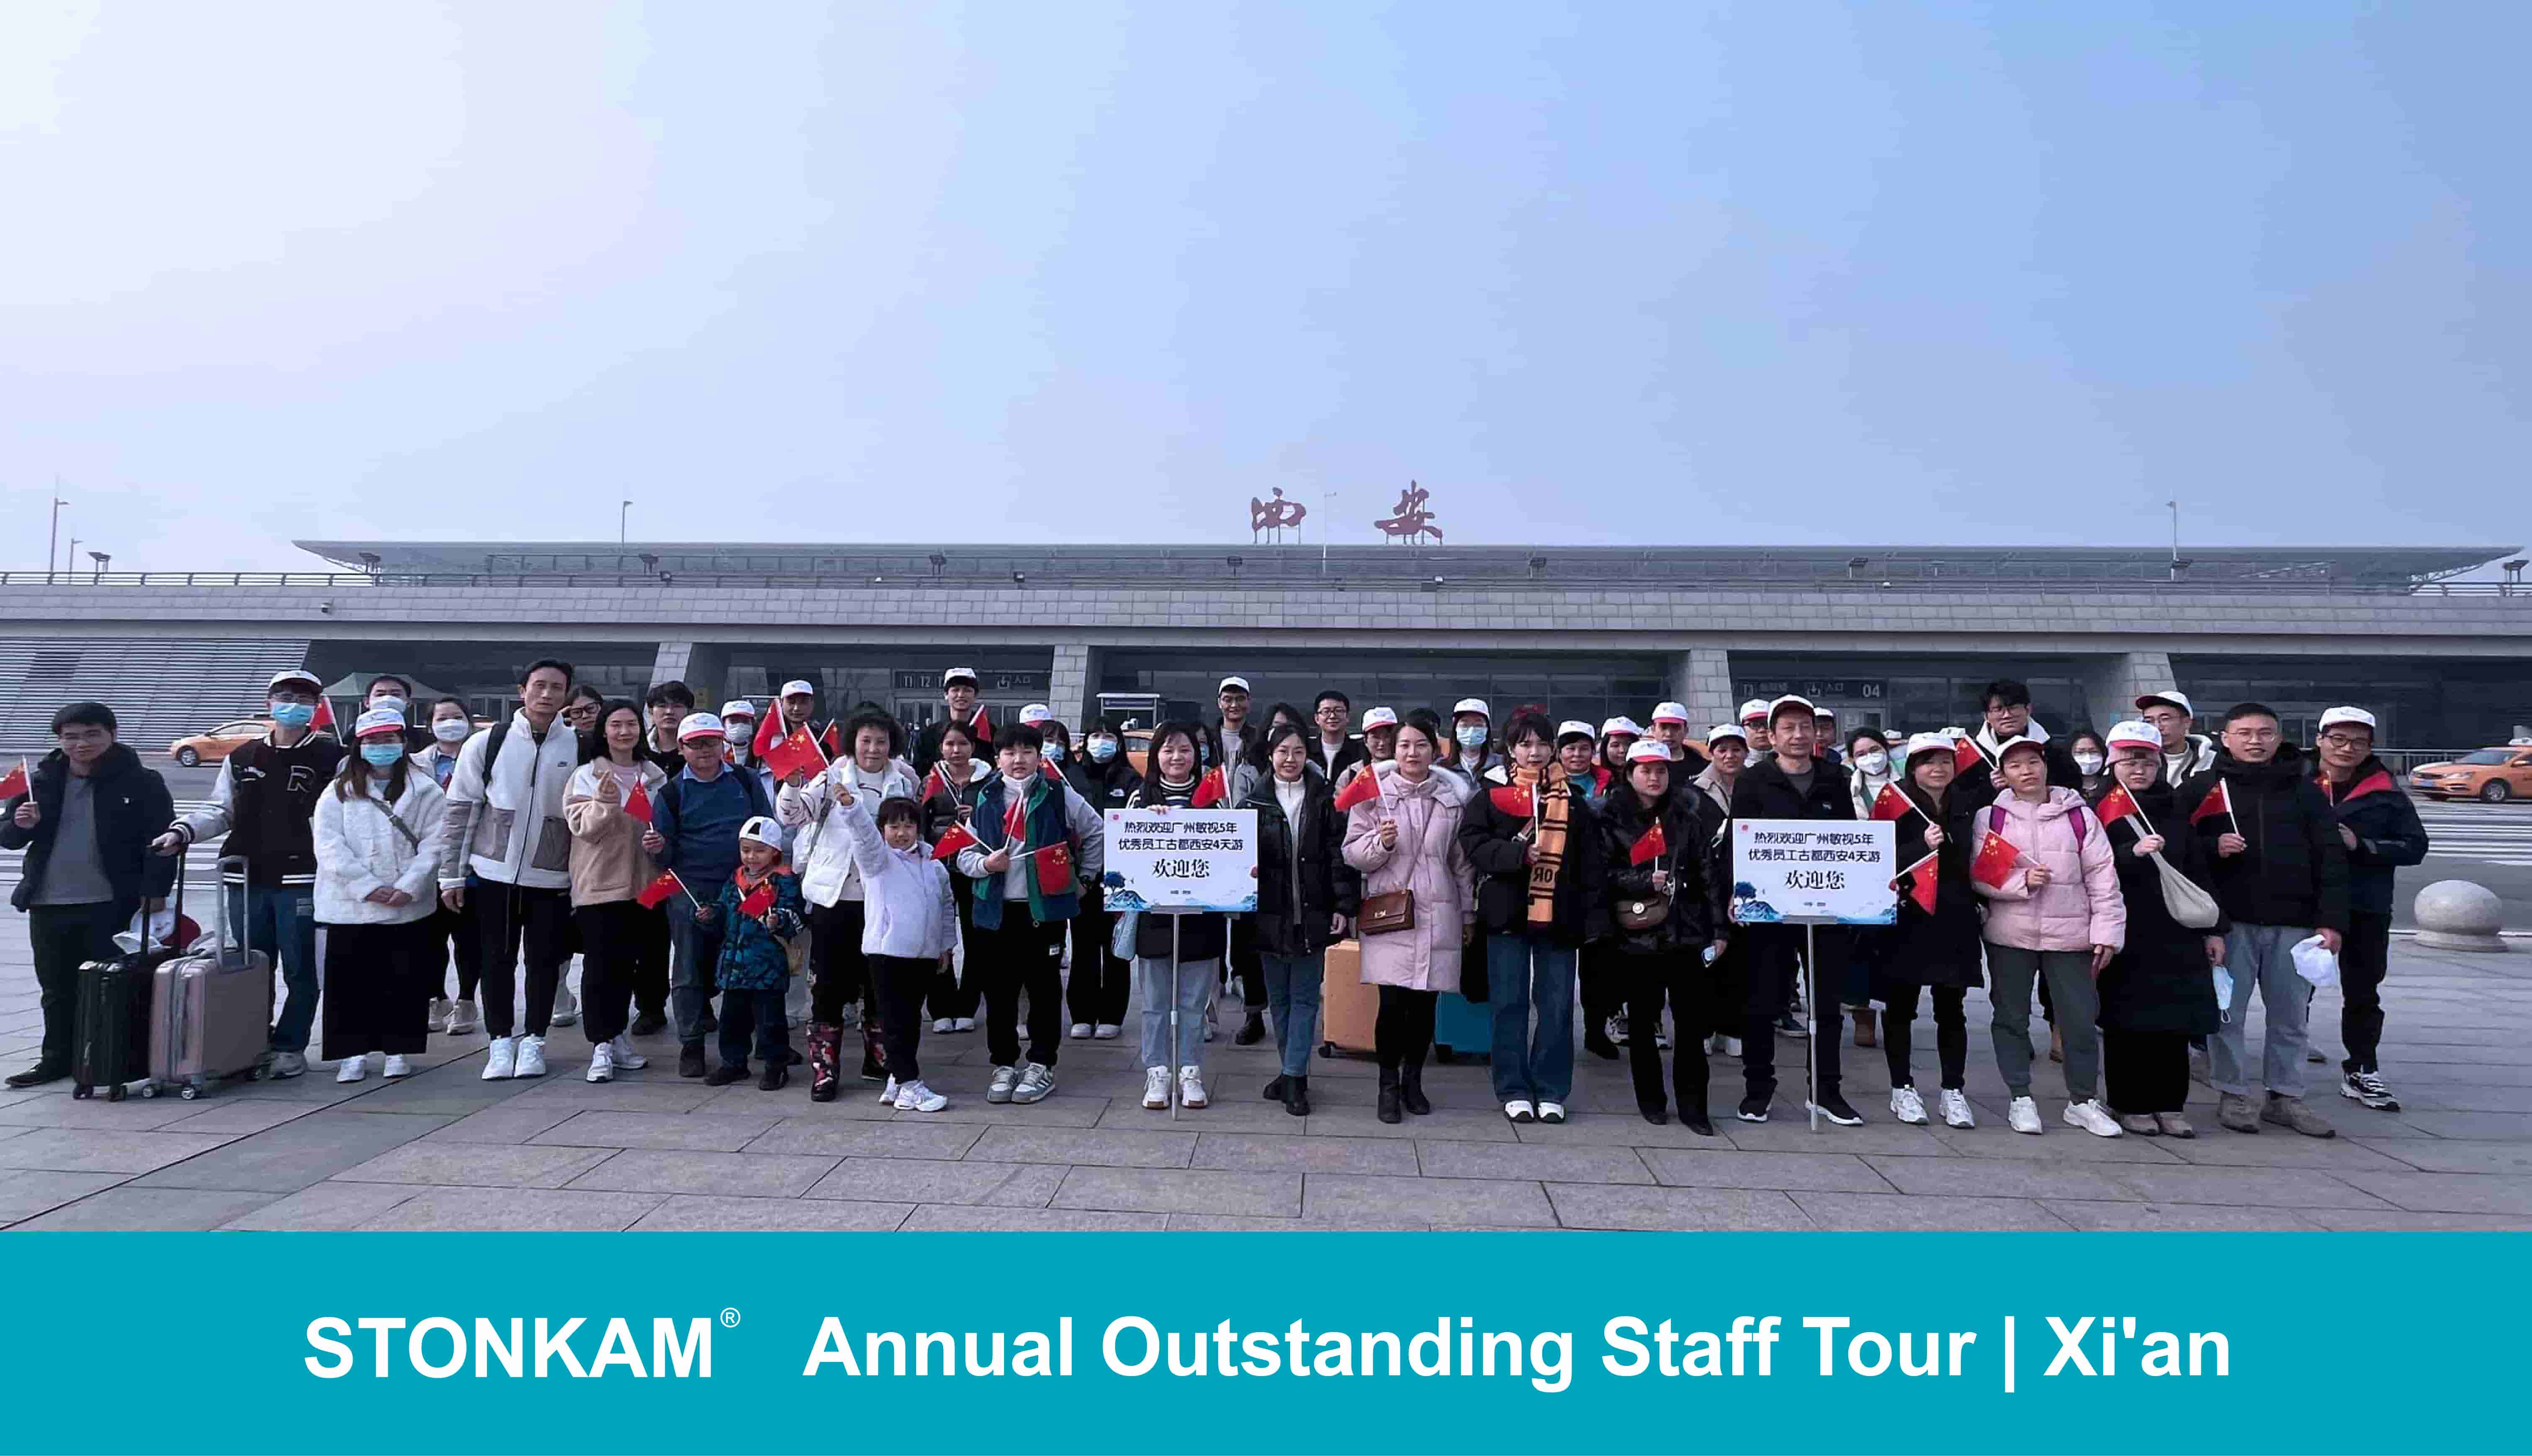 Gira anual del personal destacado de STONKAM | Xi'an